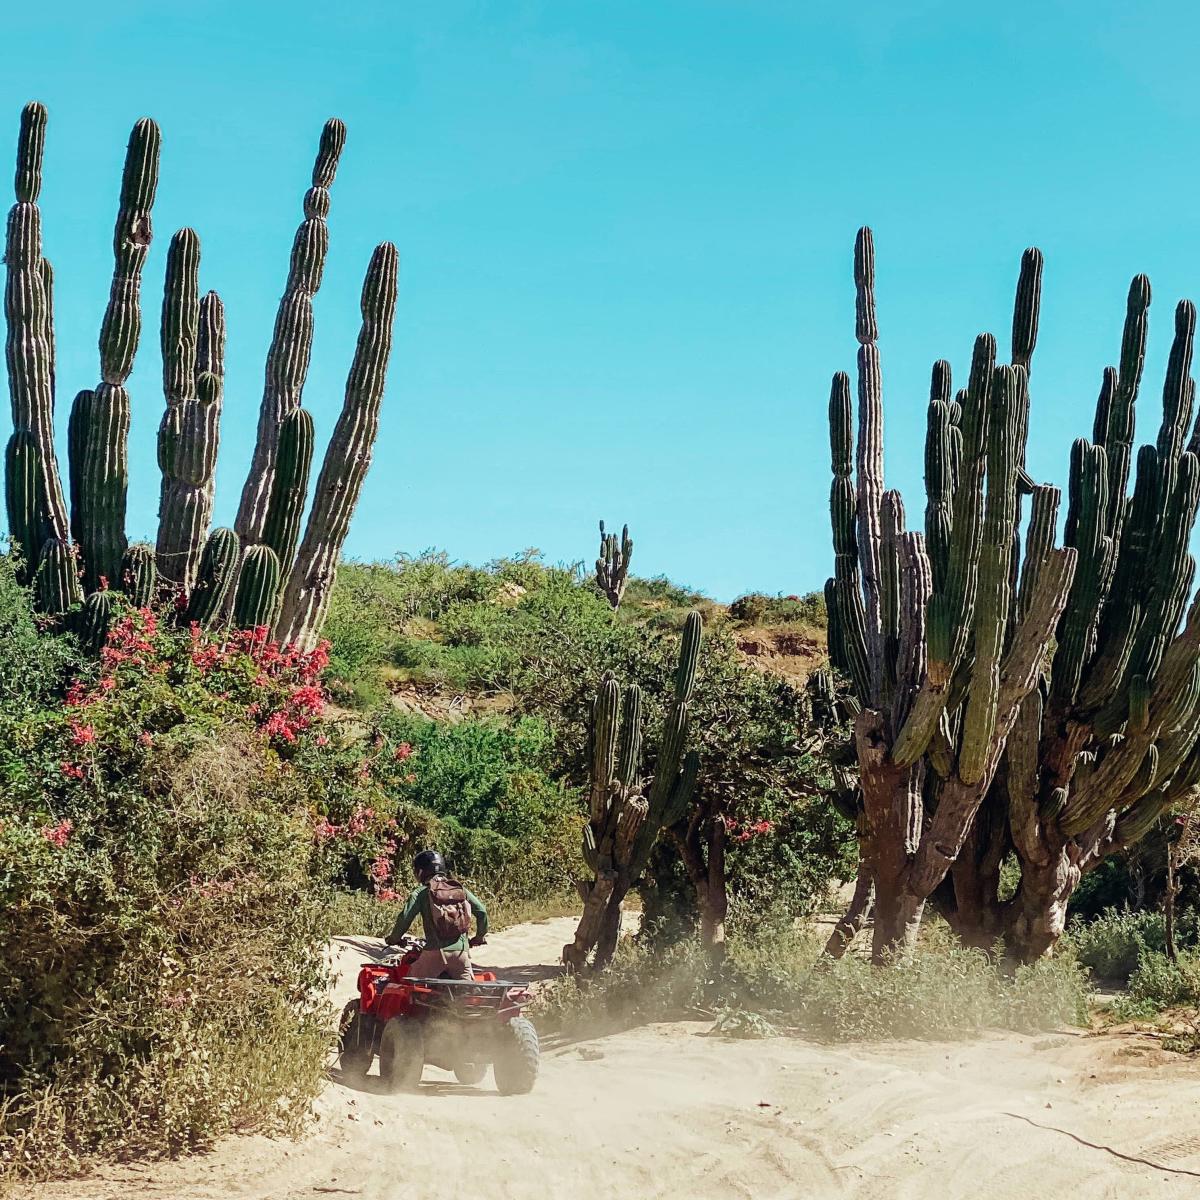 Man driving ATV in desert